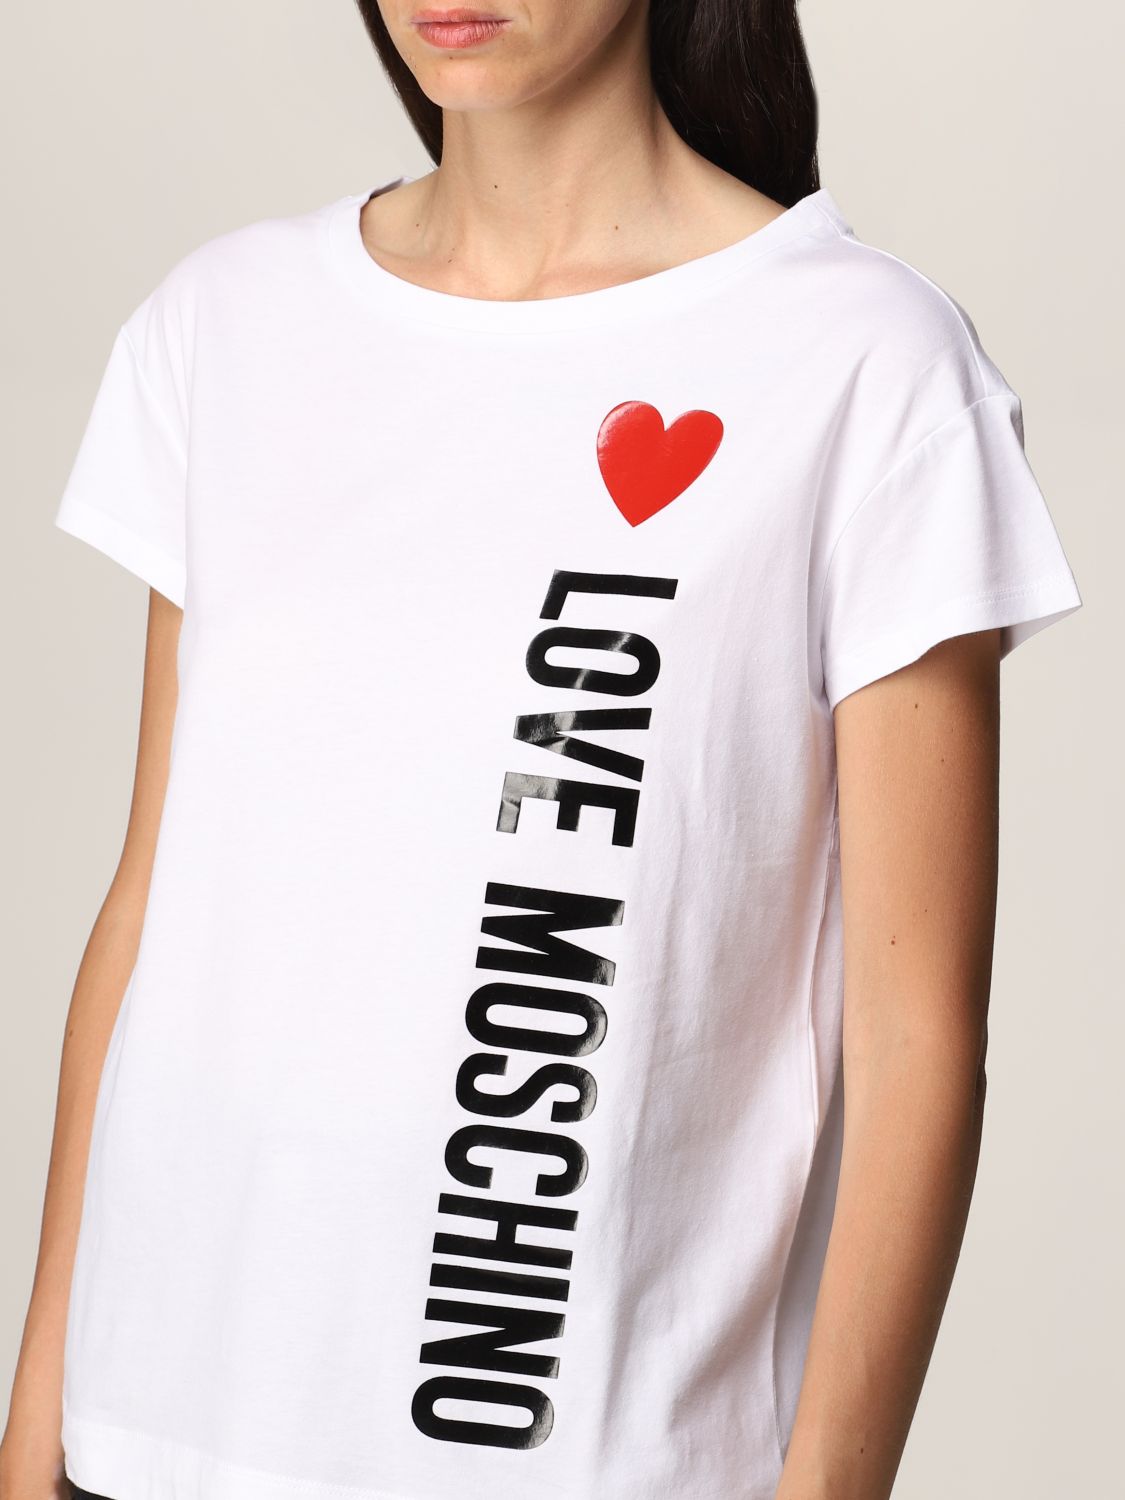 Flojamente idioma Endurecer LOVE MOSCHINO: Camiseta para mujer, Blanco | Camiseta Love Moschino W4F301Q  E1698 en línea en GIGLIO.COM